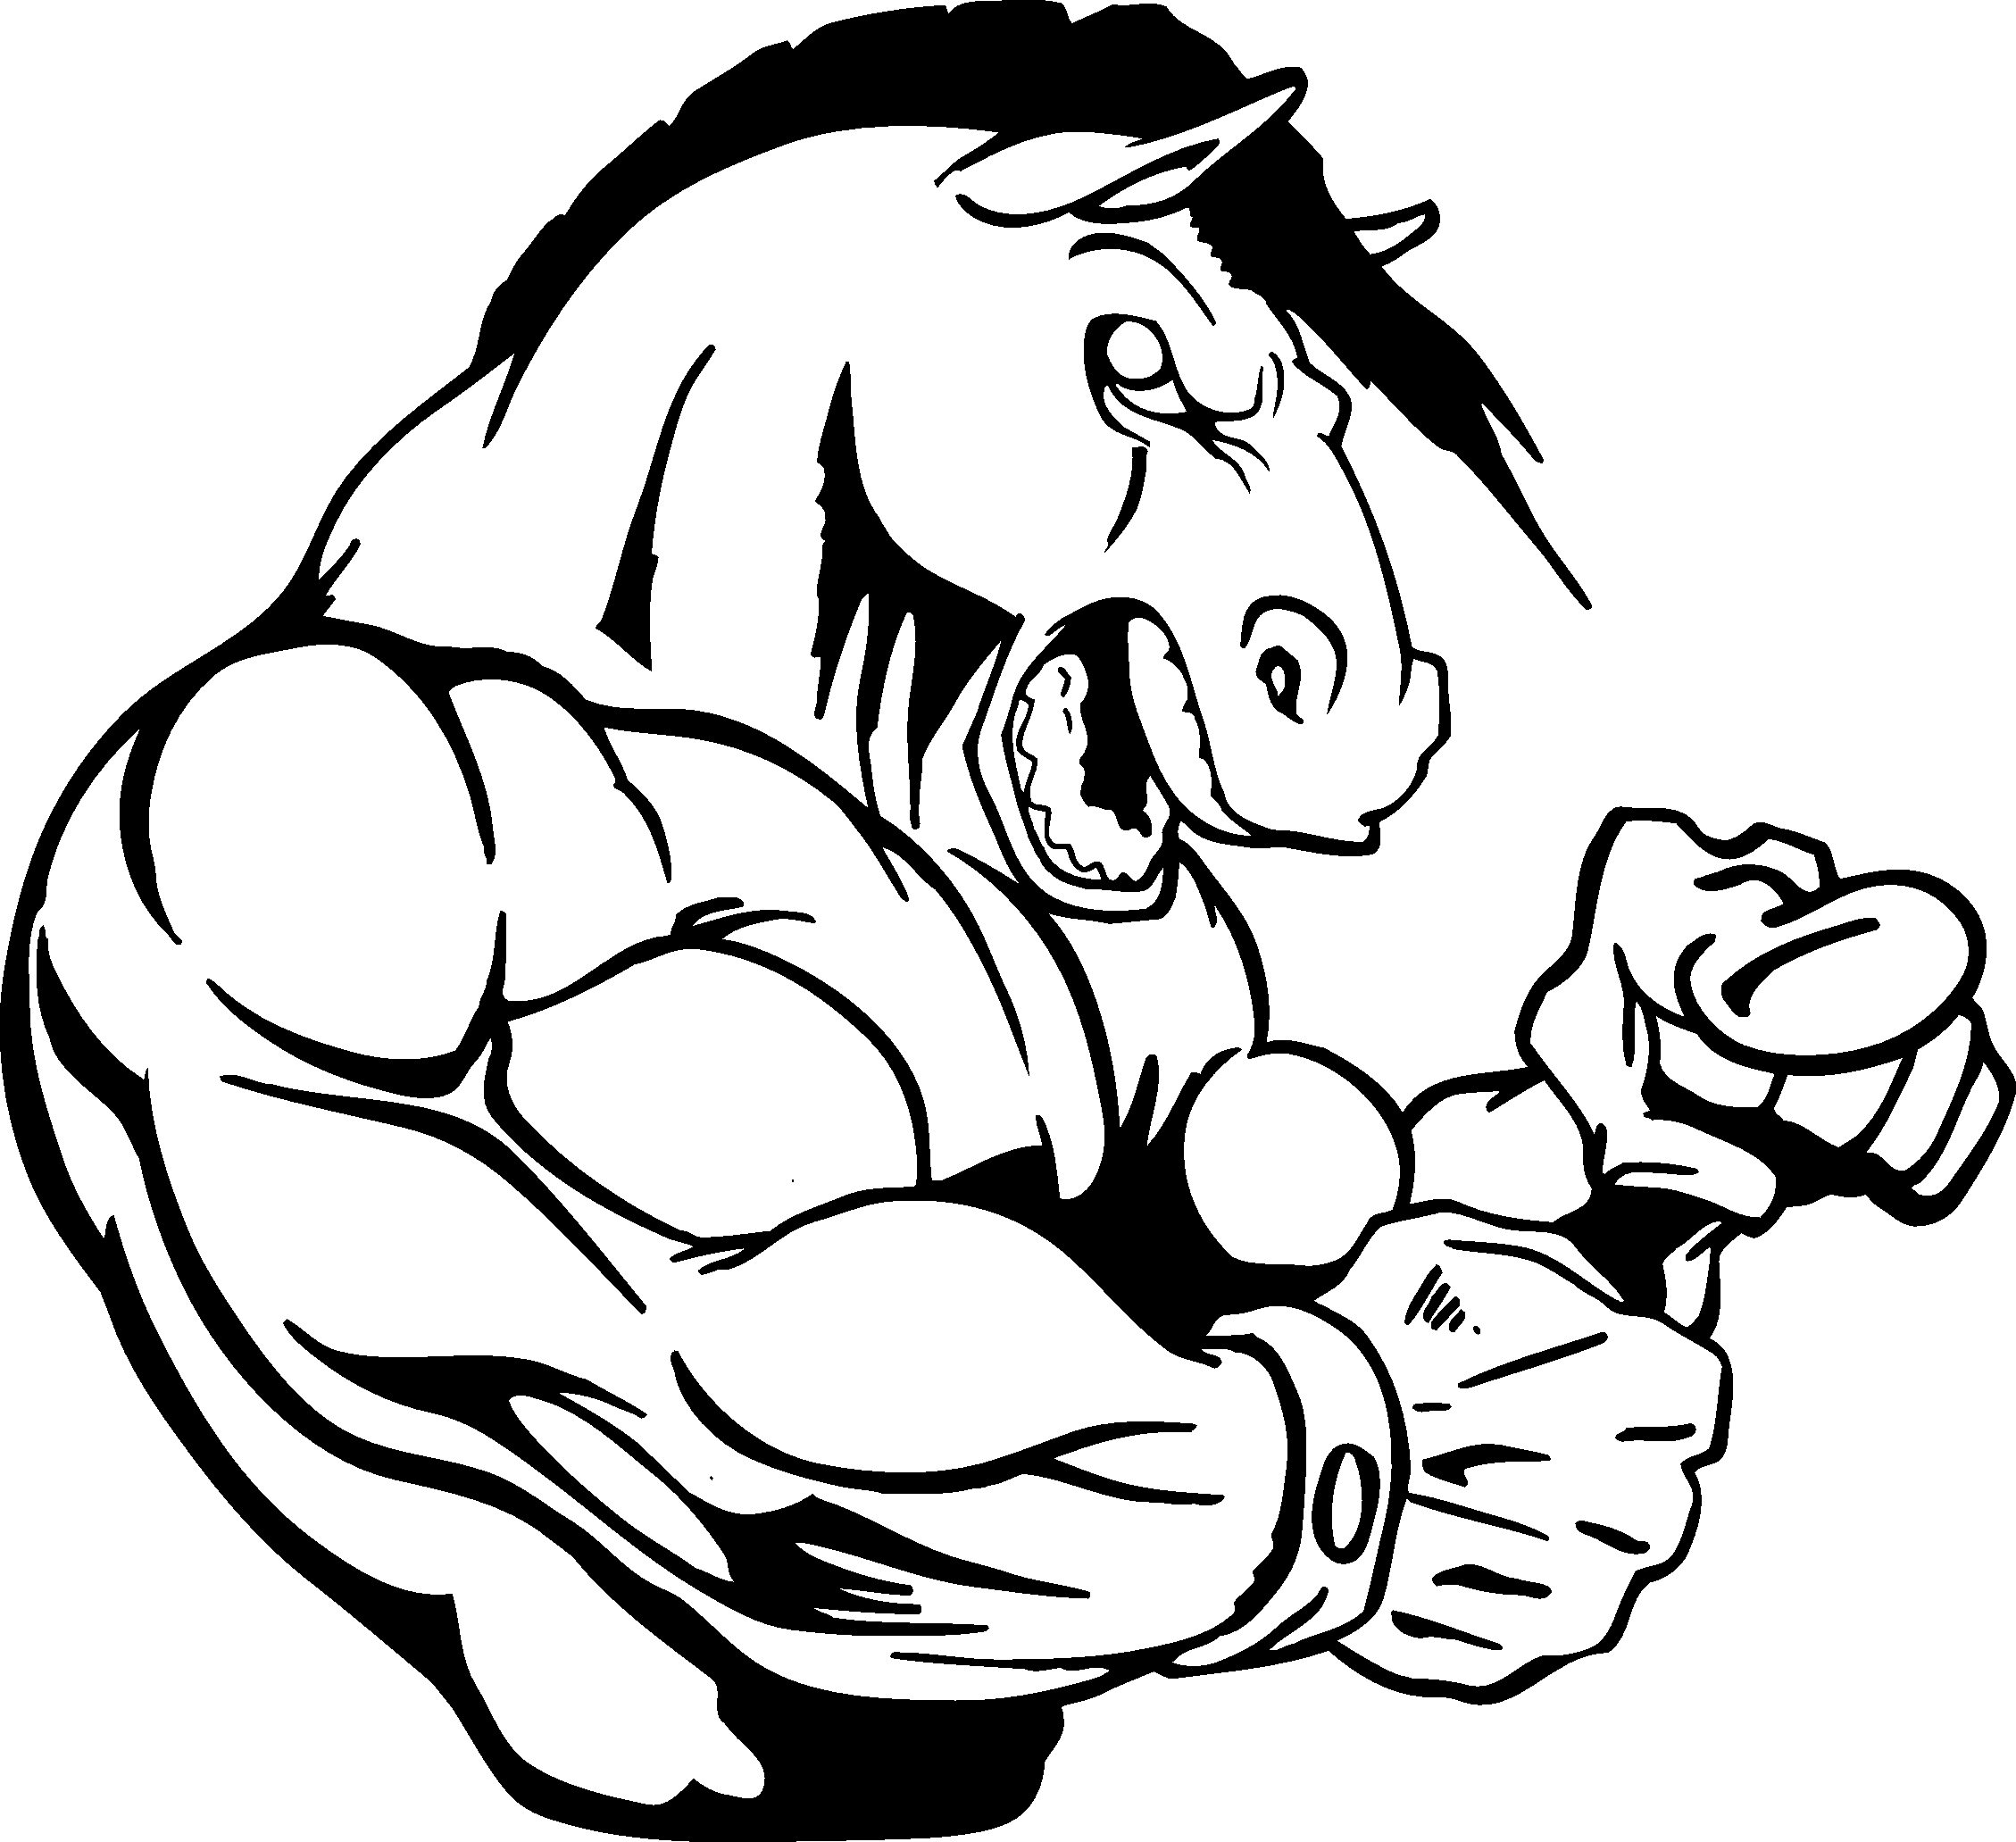 Horse mascot clipart